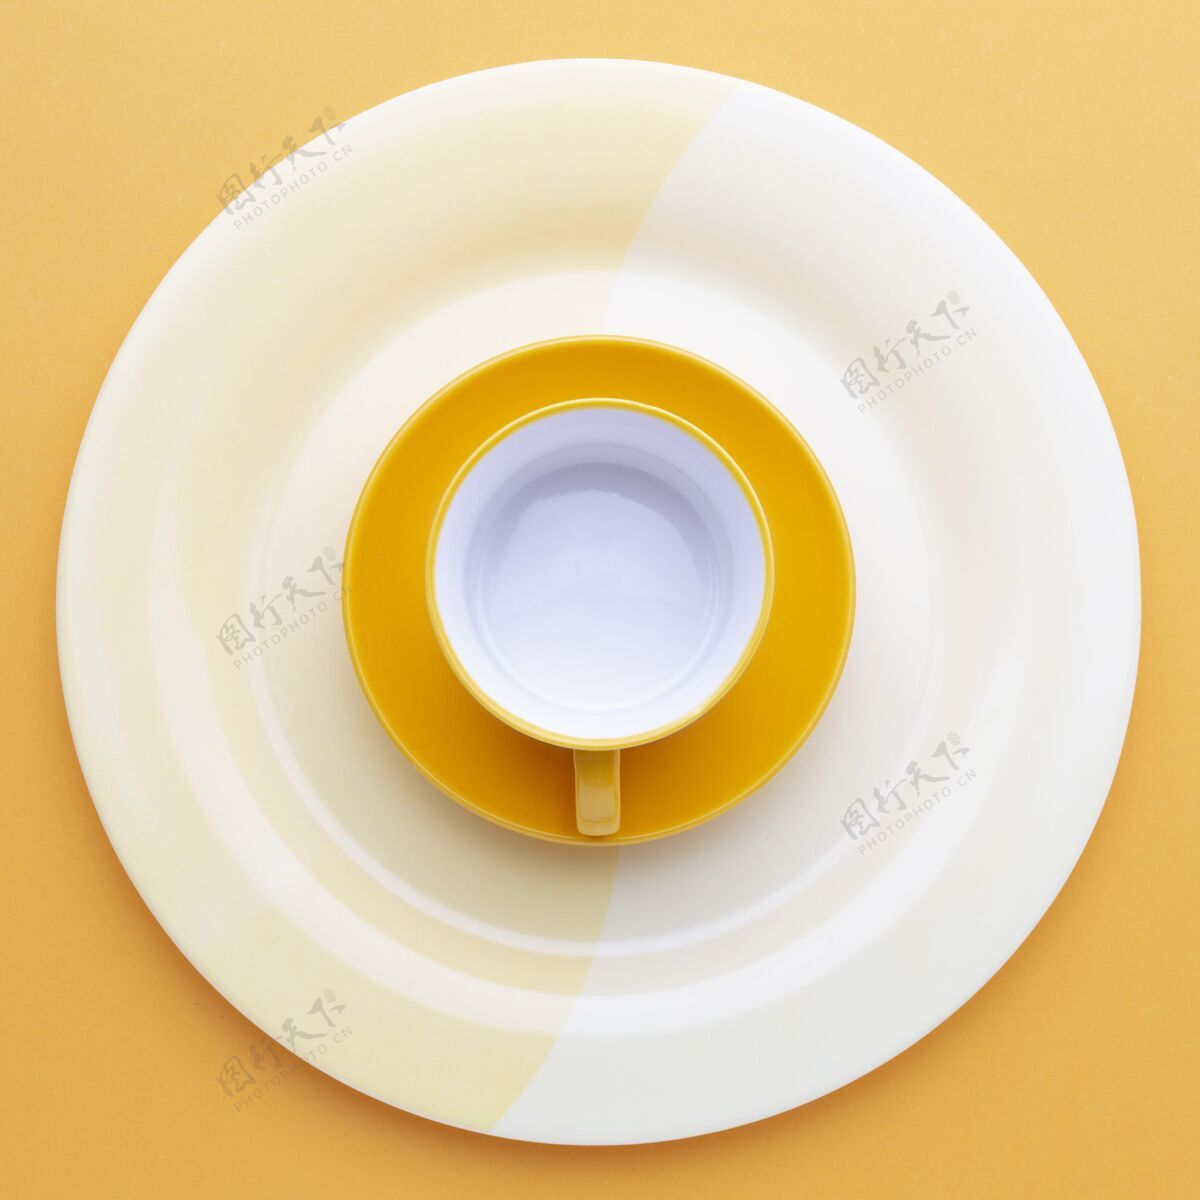 平放顶视图清洁餐具收藏盘子干净的盘子